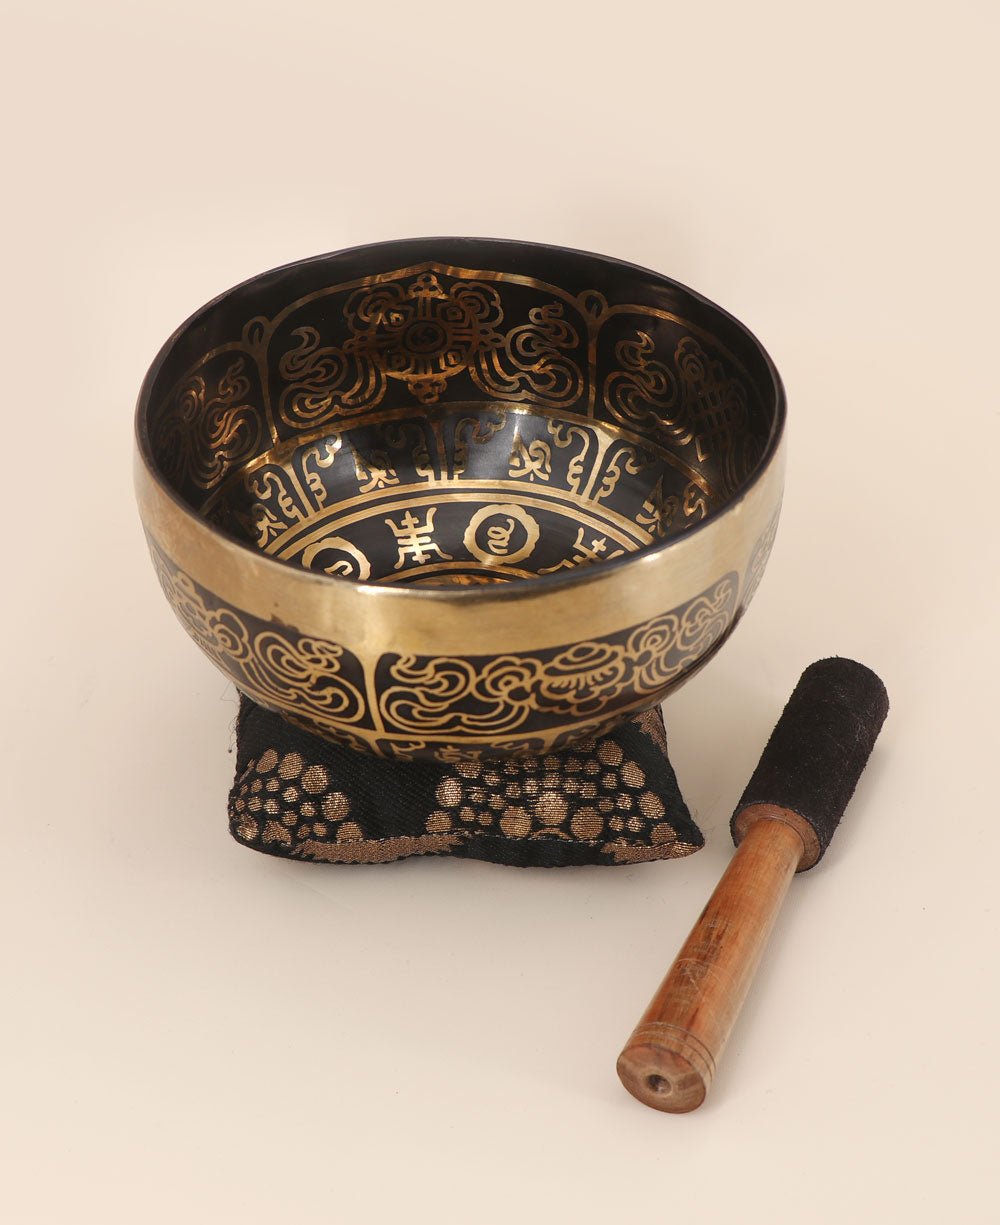 Lotus Mandala and Mantra Design Meditation Singing Bowl - Singing Bowl